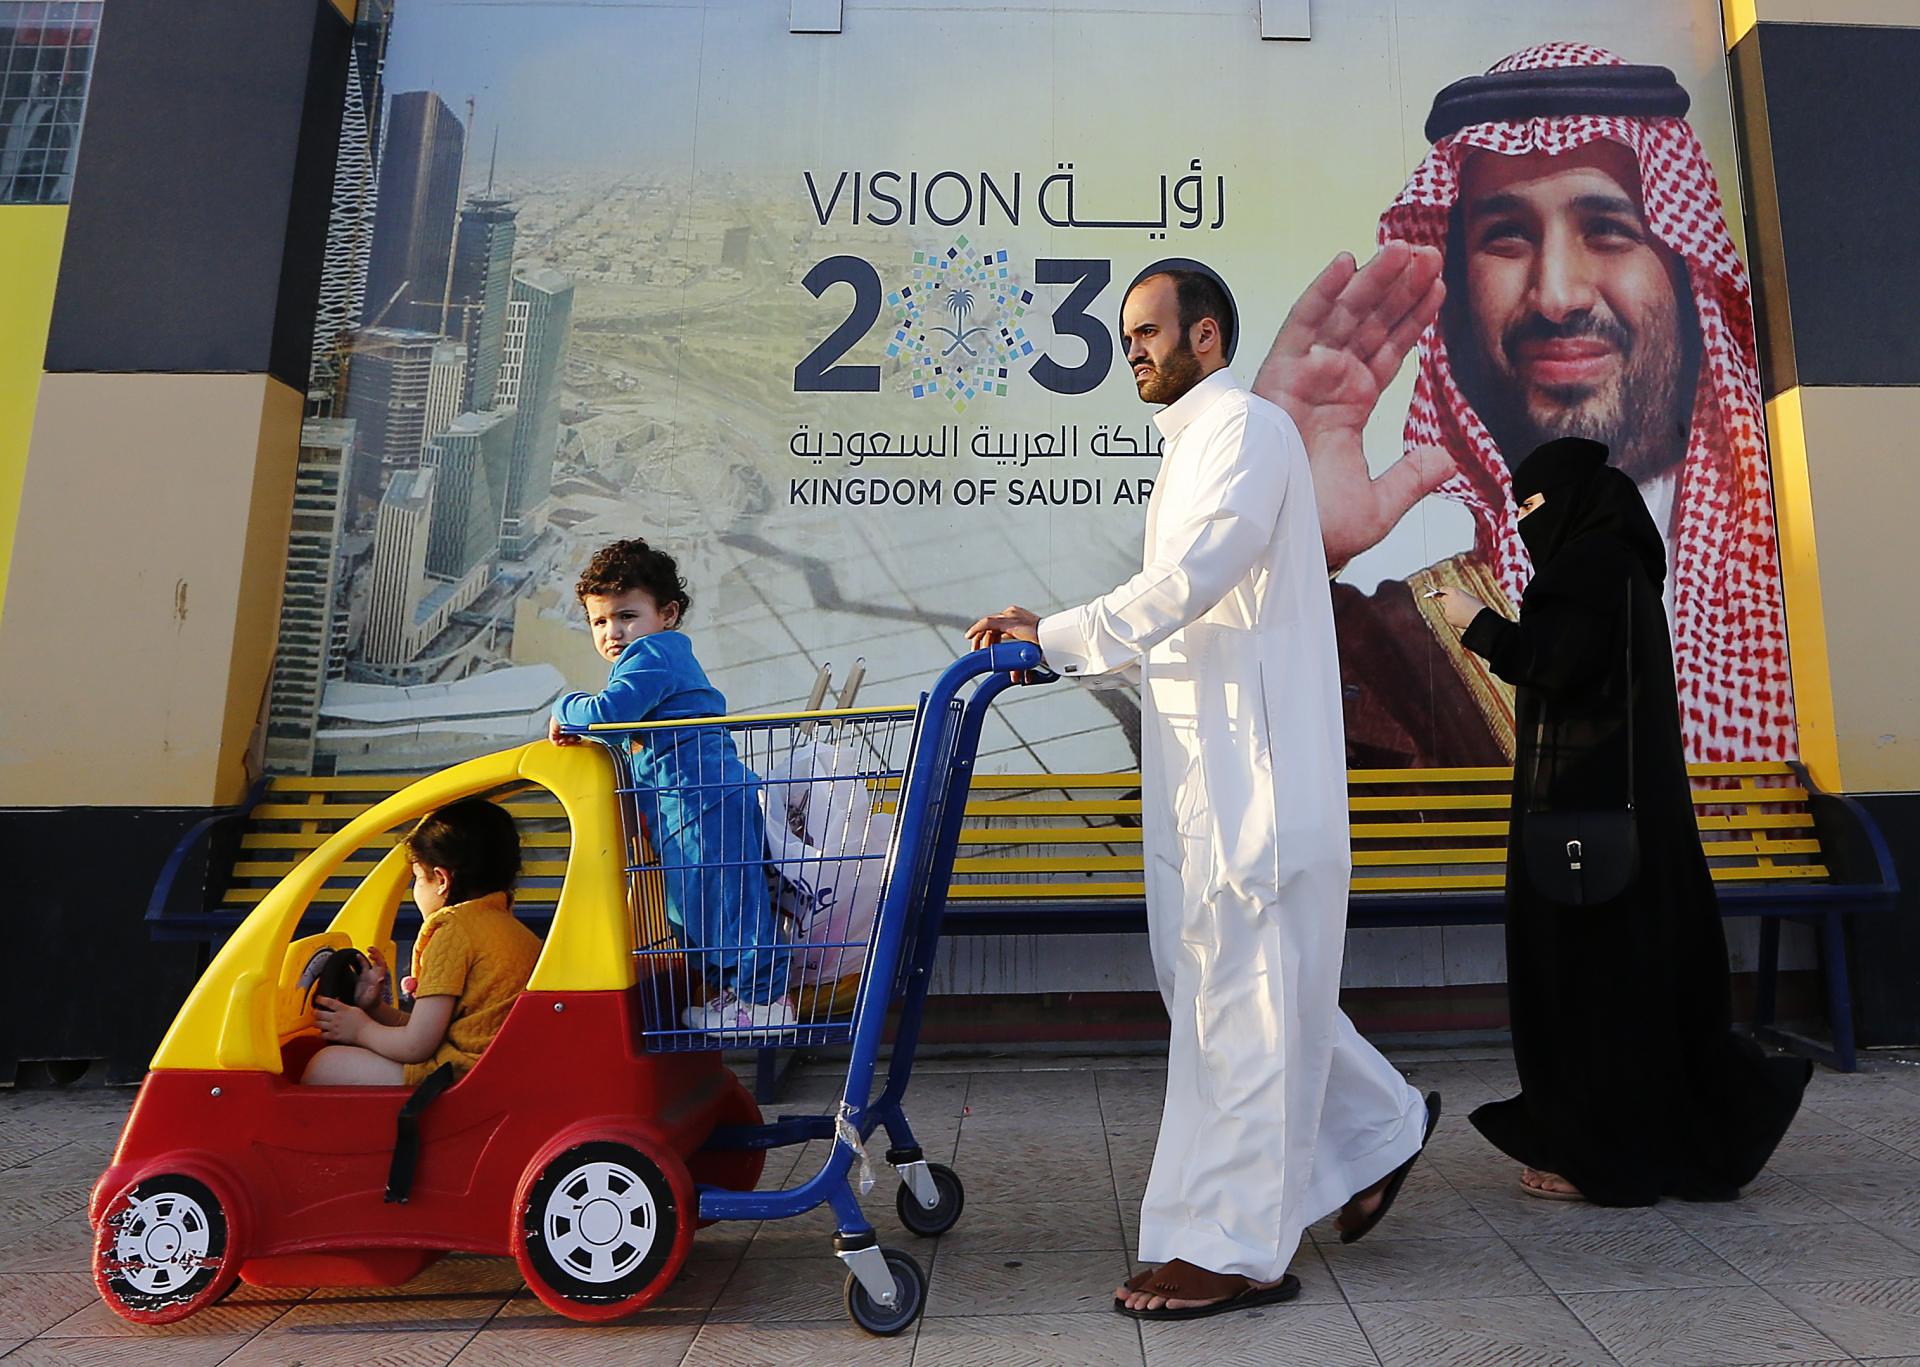 5. február 2020 Džidda, Saudská Arábia: Rodina kráča popri transparente s fotografiou saudskoarabského korunného princa Mohameda bin Salmána. Špeciálny protiteroristický súd v krajine trestá aj disidentov či kritikov režimu.